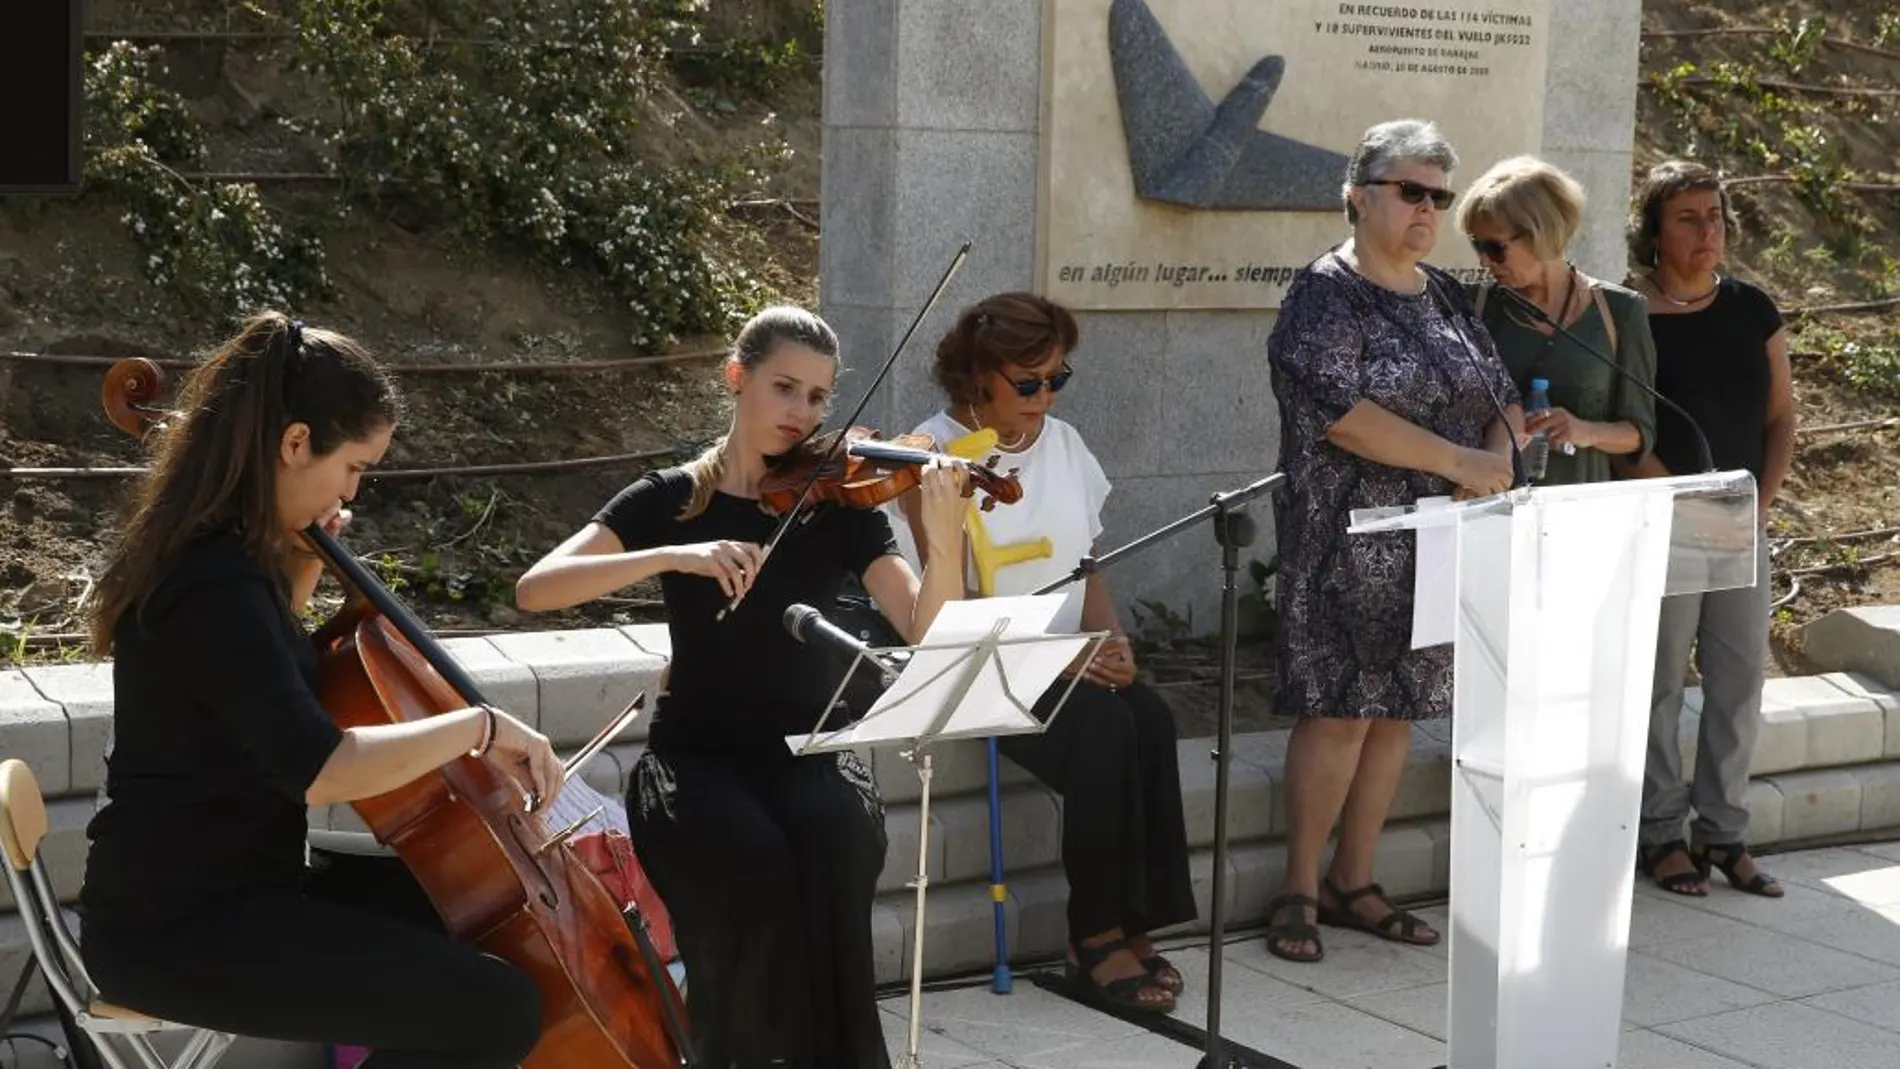 La presidenta de la Asociación de Afectados del Vuelo JK5022, Pilar Vera (3d), junto a familiares de las víctimas, durante el homenaje ante el monumento situado en el Parque Juan Carlos I de Madrid.